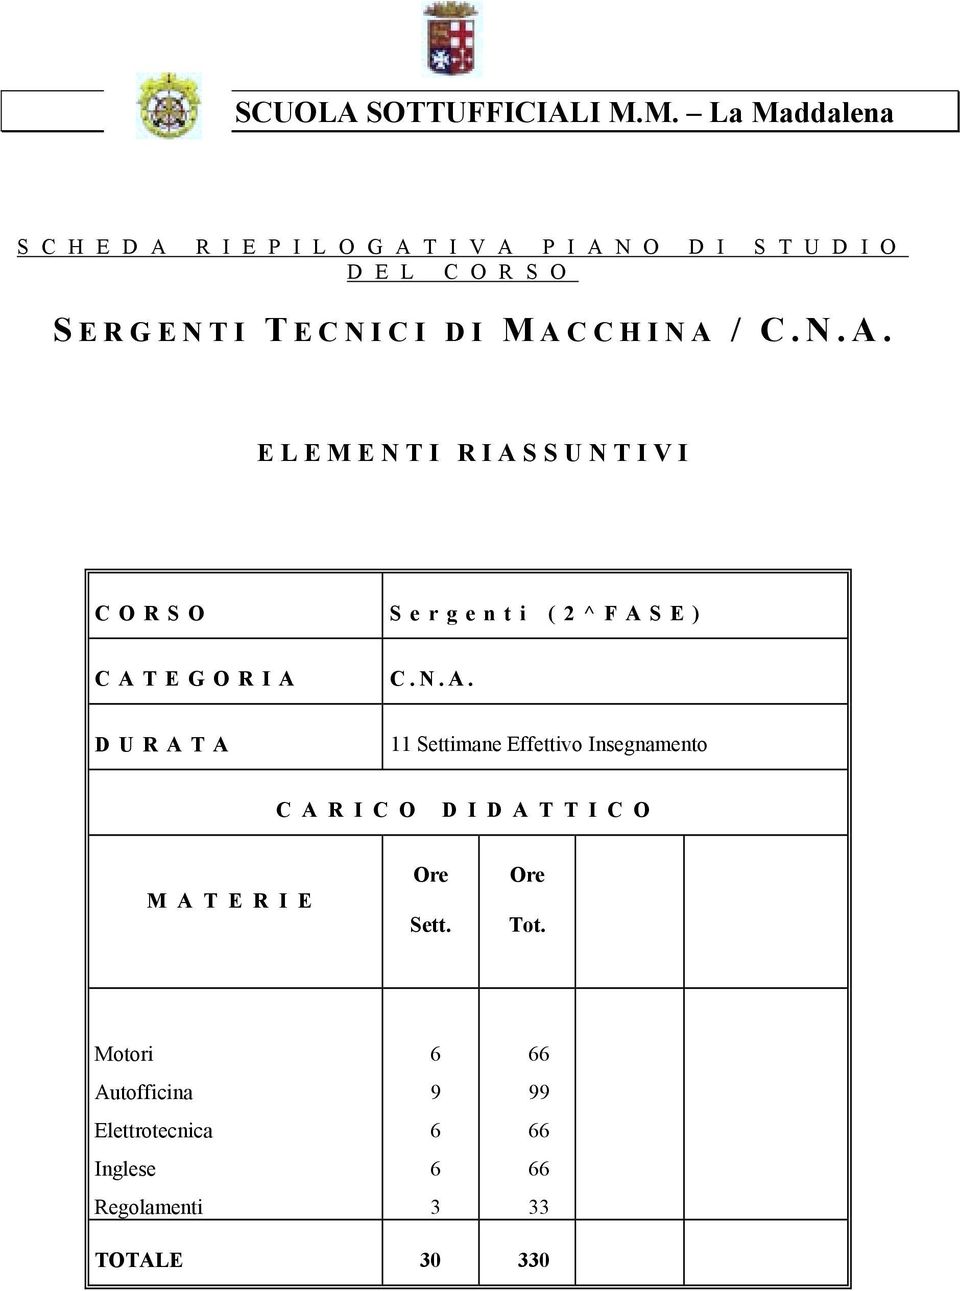 ERGENTI T ECNICI DI M ACCHINA / C.N.A. ELEMENTI RIASSUNTIVI CORSO Sergenti (2^FASE) C A T E G O R I A C.